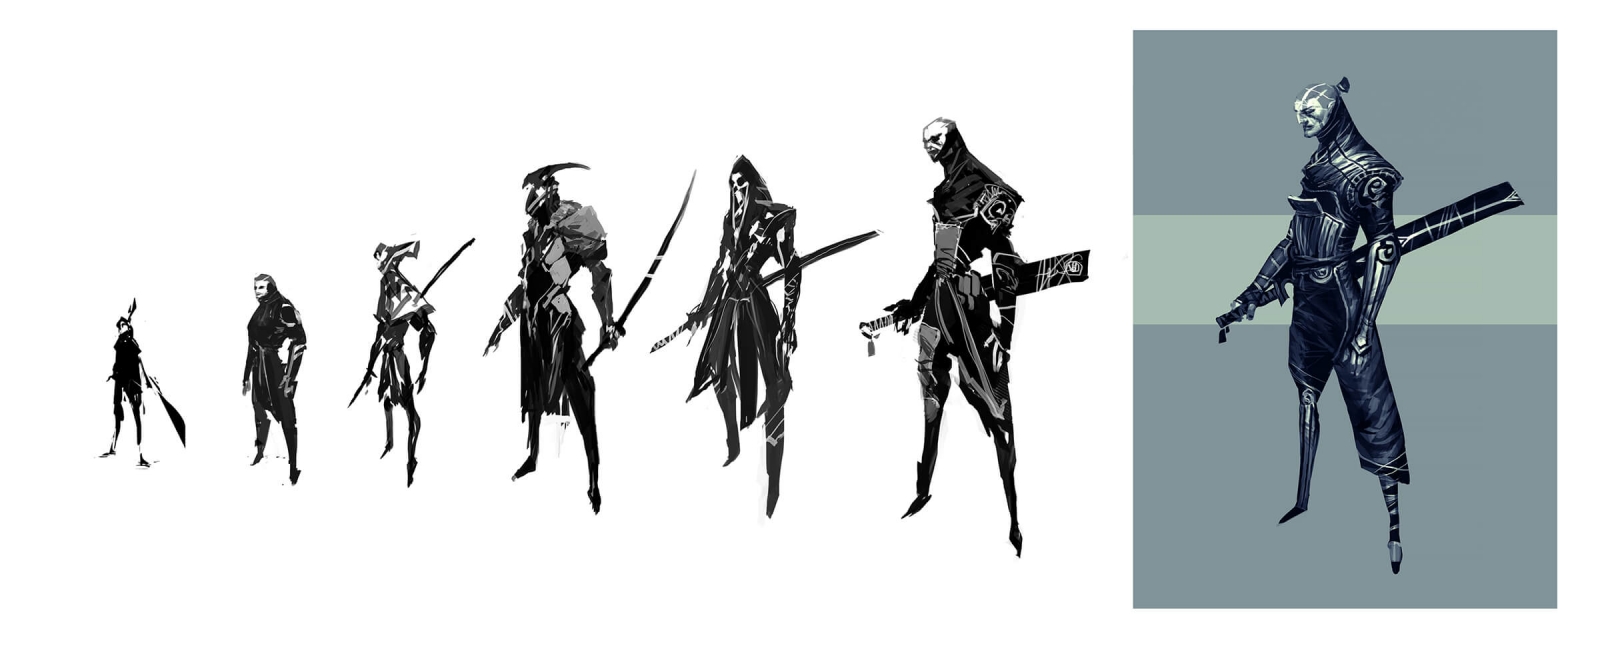 Arte en desarrollo en blanco y negro de guerreros de pie mirando desde un lado con un ornamentado equipo de batalla.